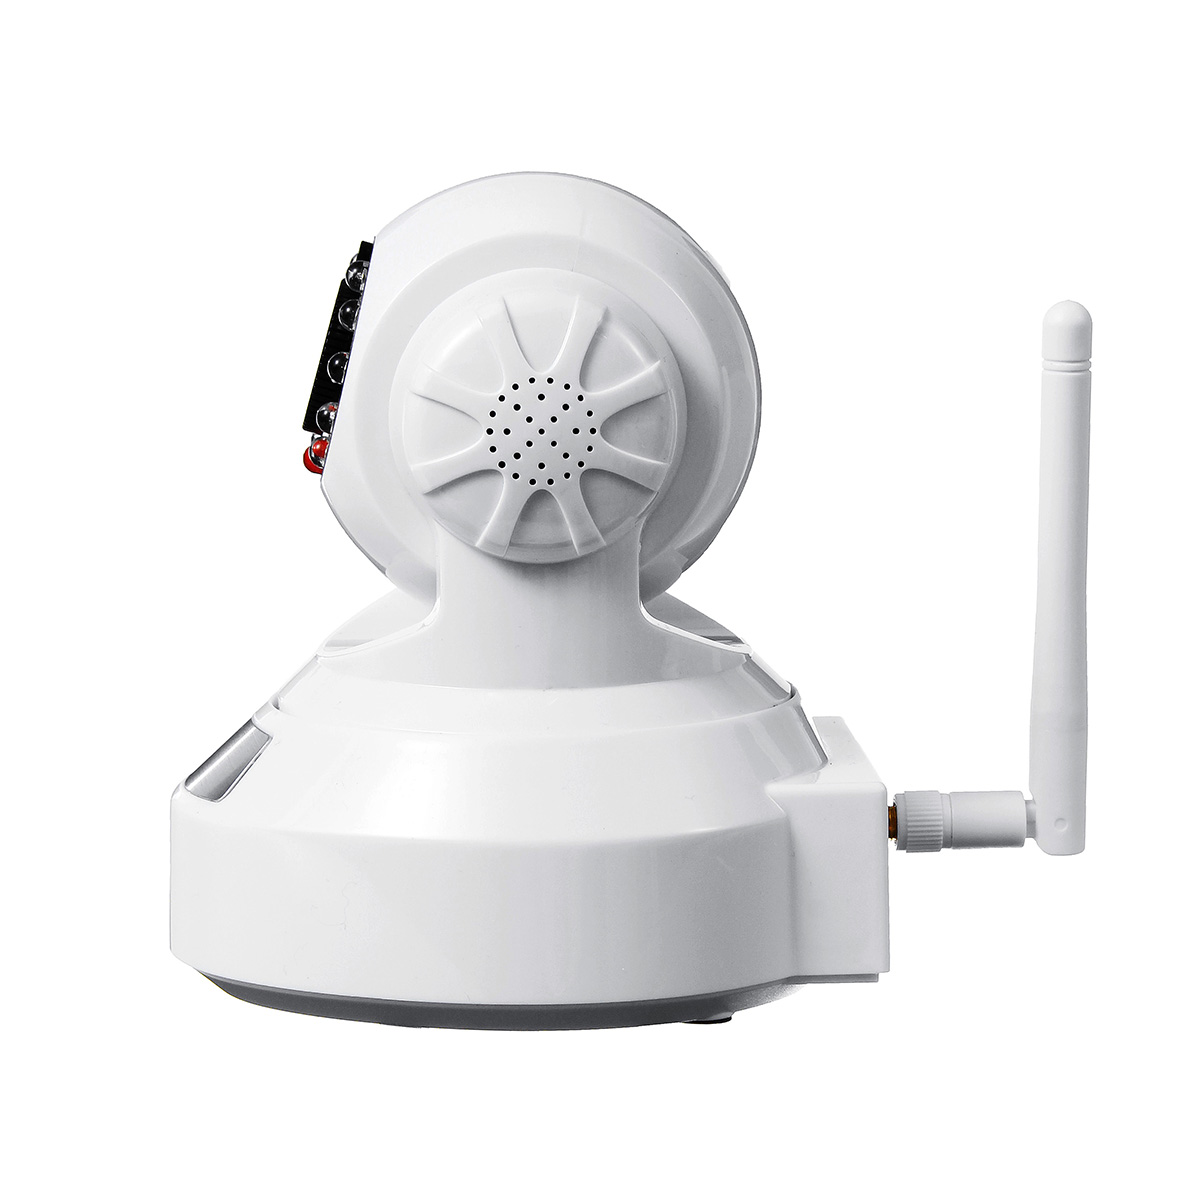 720P-Wireless-Wifi-Baby-Pet-Monitor-Panoramic-Night-Vision-Alarm-IP-CCTV-Camera-1515347